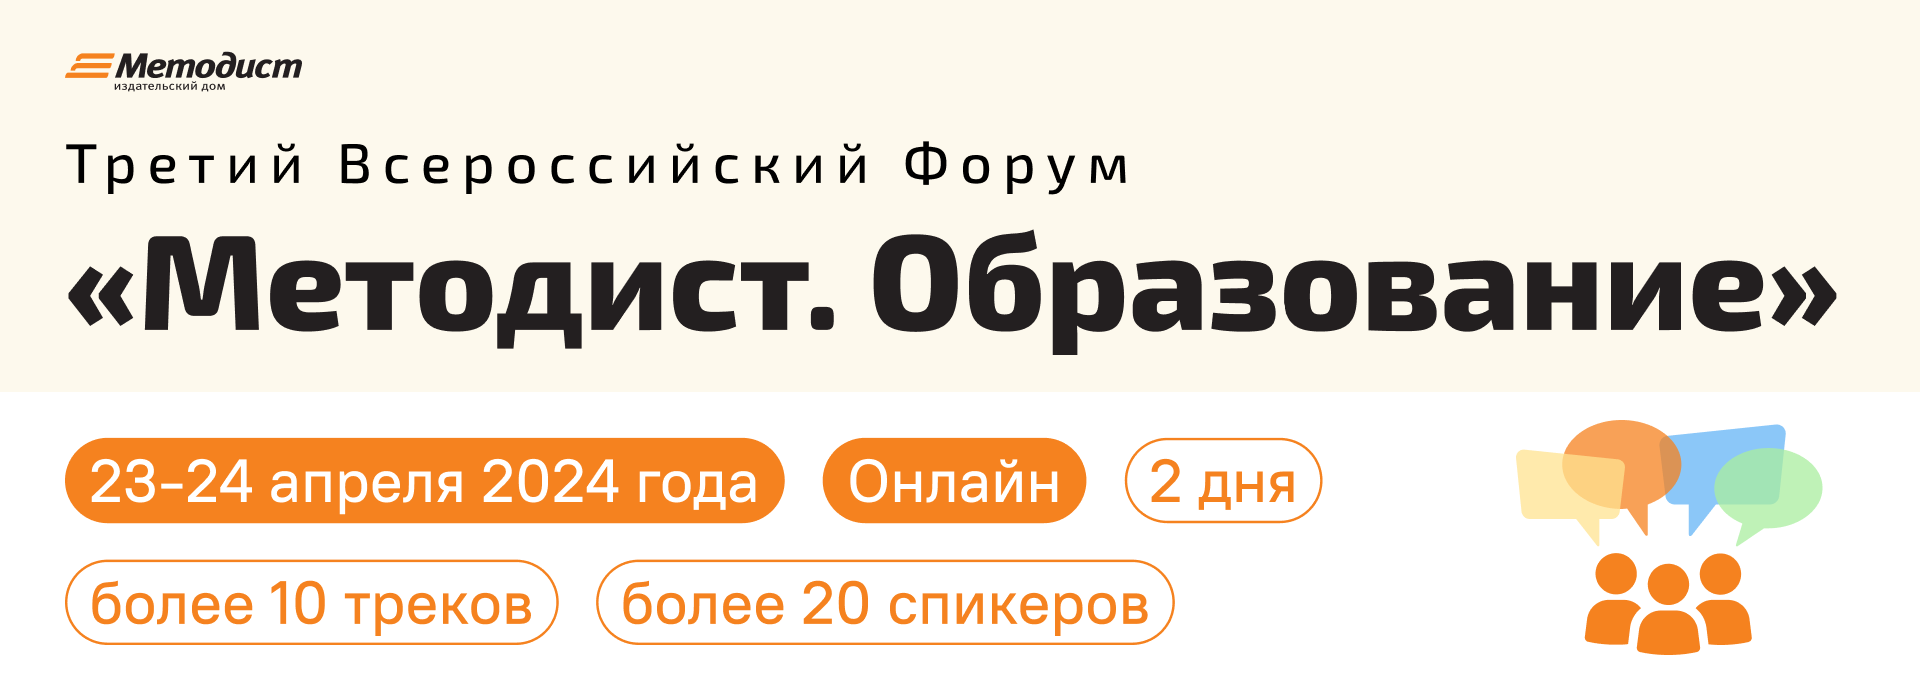 Третий всероссийский форум «Методист. Образование» в формате онлайн.